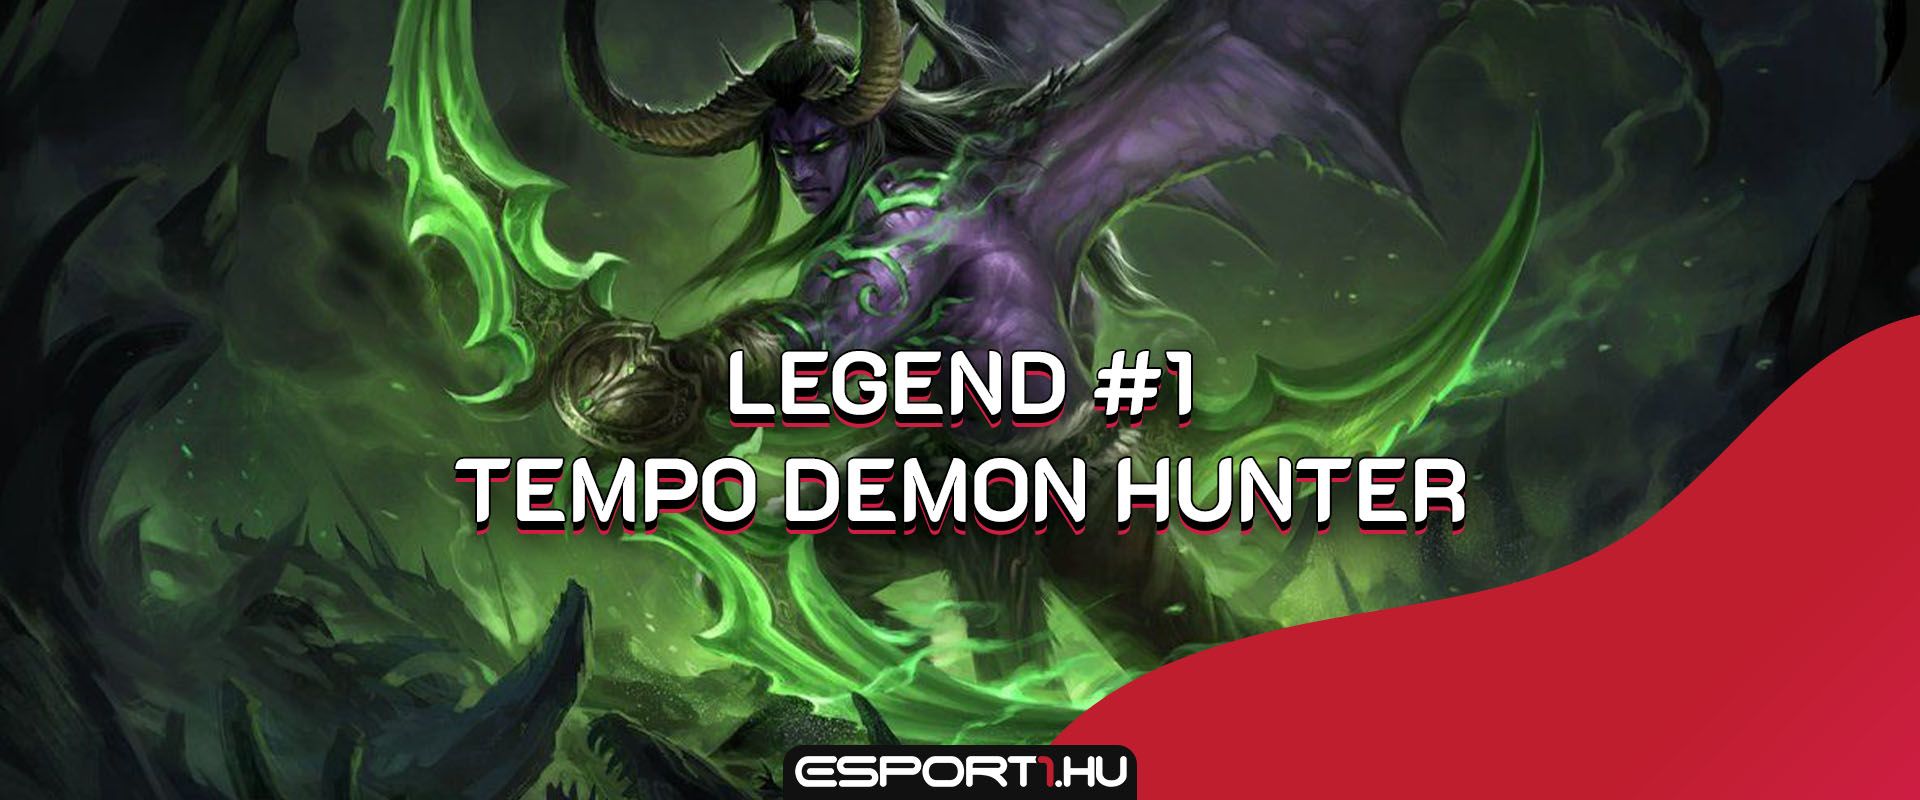 Így néz ki egy Legend #1 Tempo Demon Hunter a nerfek után